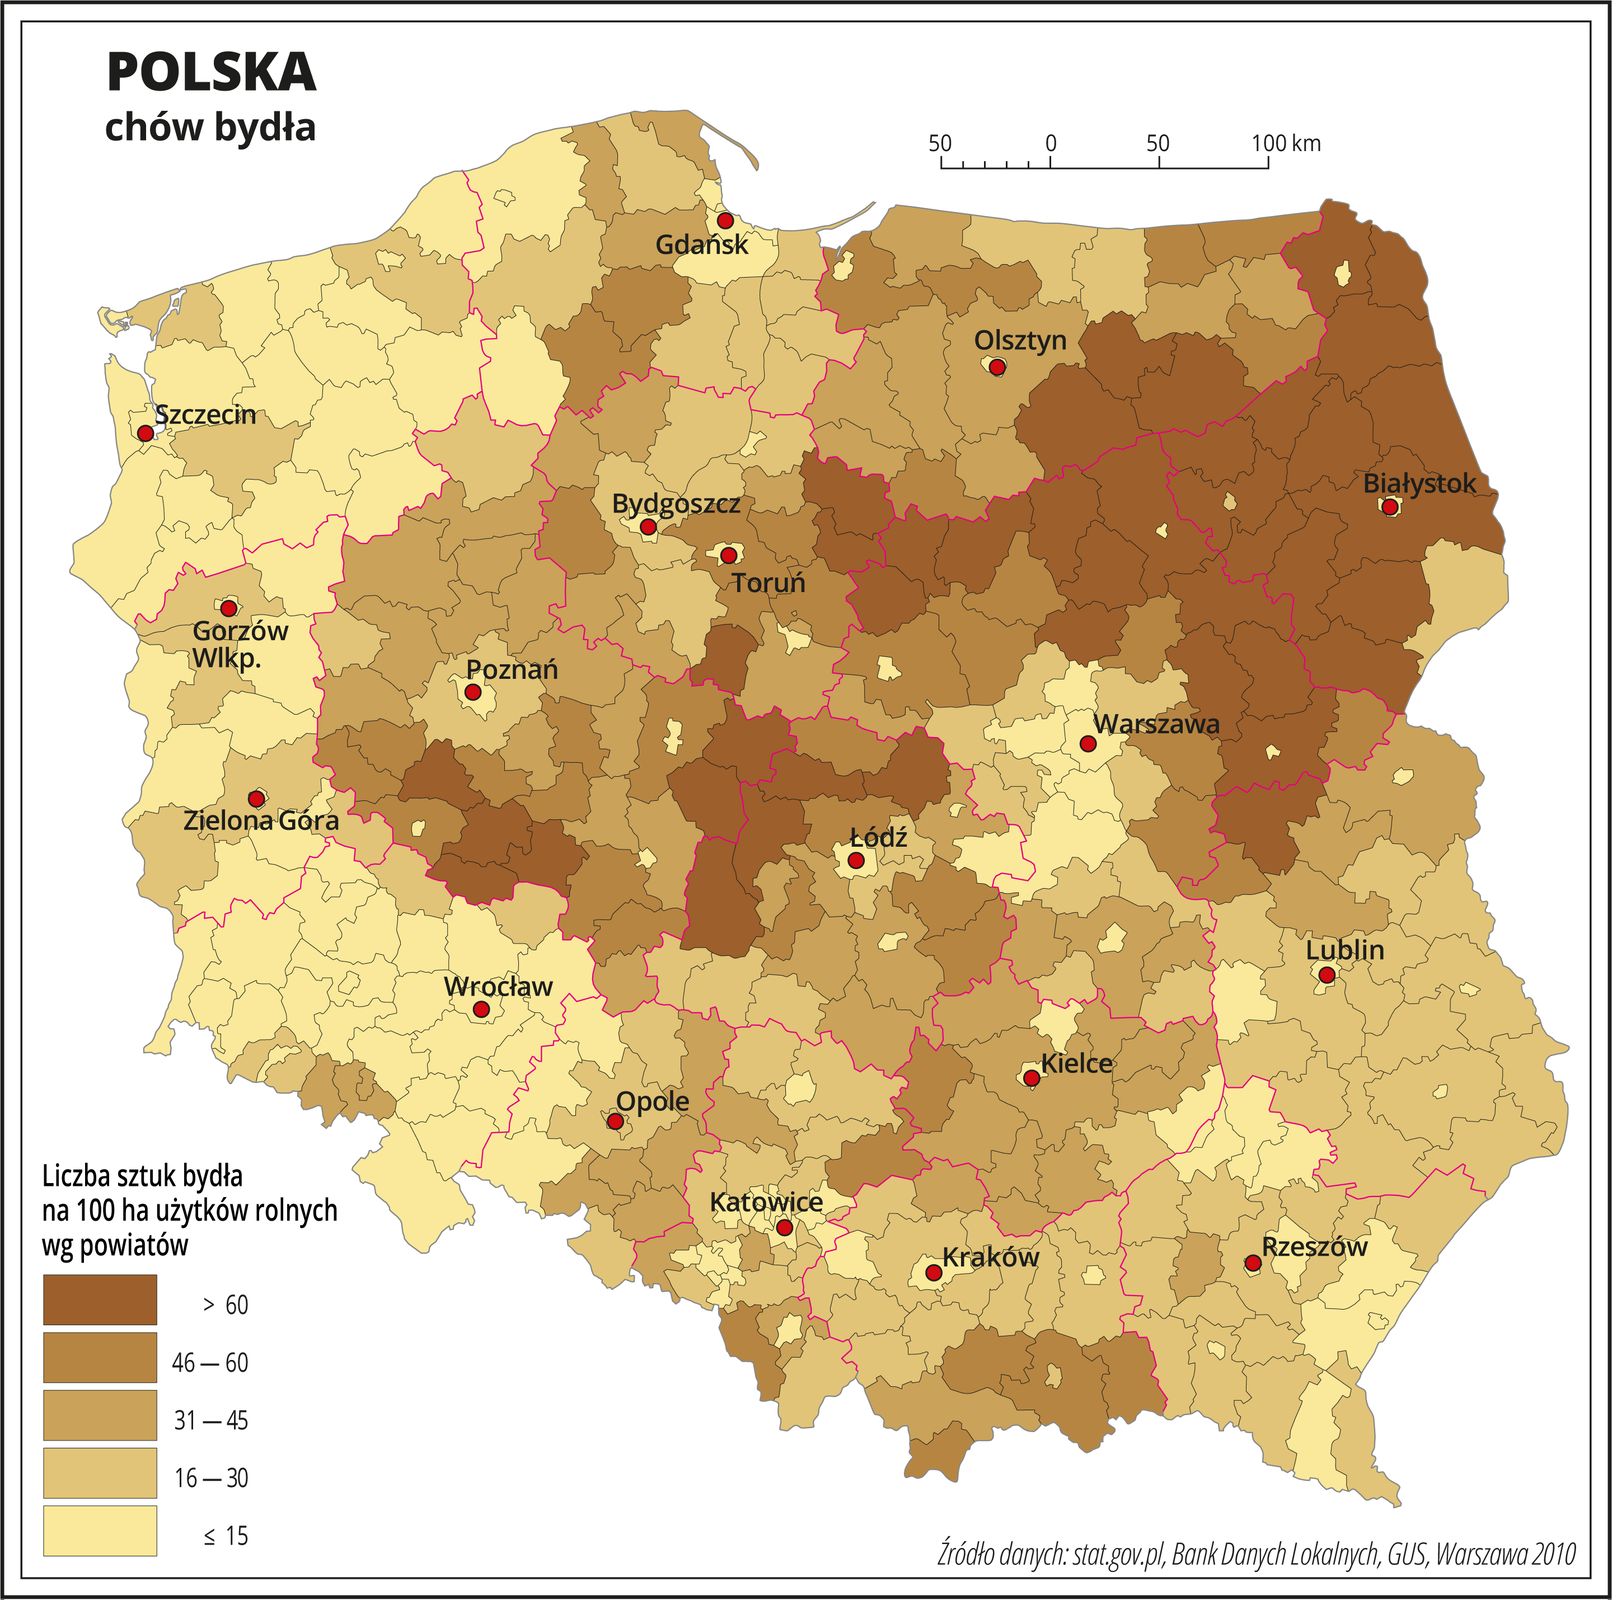 Ilustracja przedstawia mapę Polski z podziałem na powiaty, na której za pomocą kolorów przedstawiono liczbę sztuk bydła na sto hektarów użytków rolnych wg powiatów. Na mapie czerwonymi liniami oznaczono granice województw, a czarnymi granice powiatów, czerwonymi kropkami oznaczono miasta wojewódzkie i je opisano. Najciemniejszym odcieniem koloru brązowego oznaczono obszary, gdzie występuje powyżej sześćdziesięciu sztuk bydła na sto hektarów użytków rolnych. Jest to województwo podlaskie, północna i wschodnia część województwa mazowieckiego, południowa część województwa warmińsko-mazurskiego i kilka powiatów na styku województwa wielkopolskiego i łódzkiego. Najjaśniejszym odcieniem oznaczono obszary, gdzie hoduje się poniżej piętnastu sztuk bydła na sto hektarów użytków rolnych. Jest to centralna część województwa mazowieckiego, okolice Łodzi i zachodnia część Polski. W pozostałych powiatach oznaczonych trzema różnymi odcieniami koloru brązowego przedstawiono obszary, na których hodowla bydła waha się od szesnastu do sześćdziesięciu sztuk na sto hektarów użytków rolnych. Występują one na mapie w zbliżonych ilościach i są rozłożone nierównomiernie. Poniżej mapy w legendzie opisano kolory użyte na mapie.